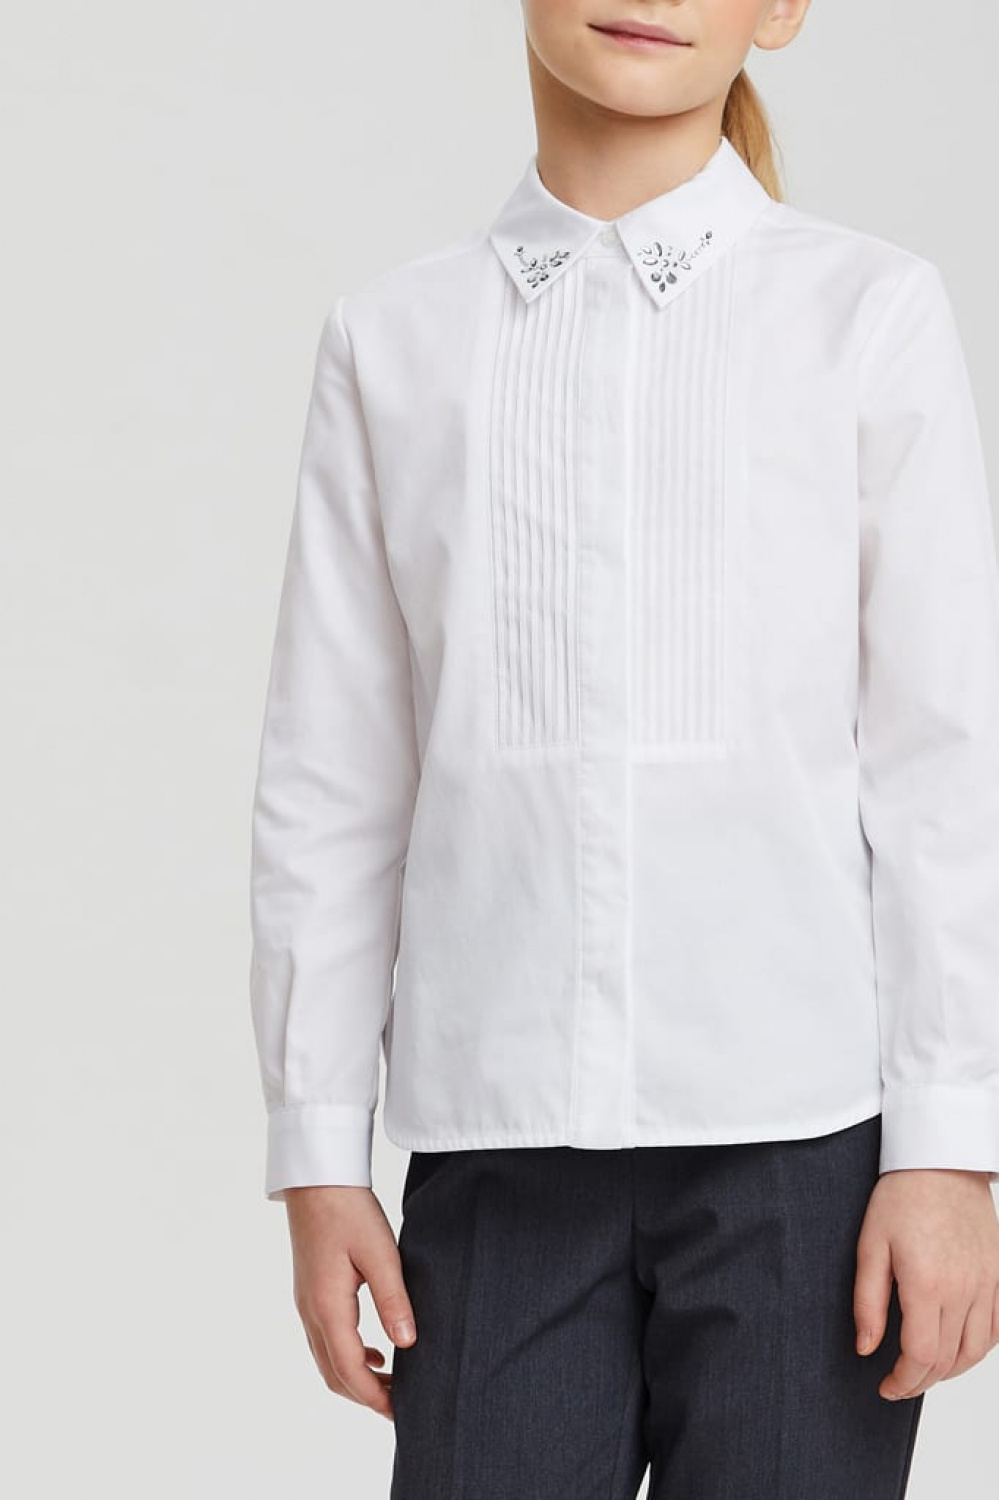 Хлопковая рубашка с декорированным воротником (SSFSG-029-23011-200) Silver Spoon